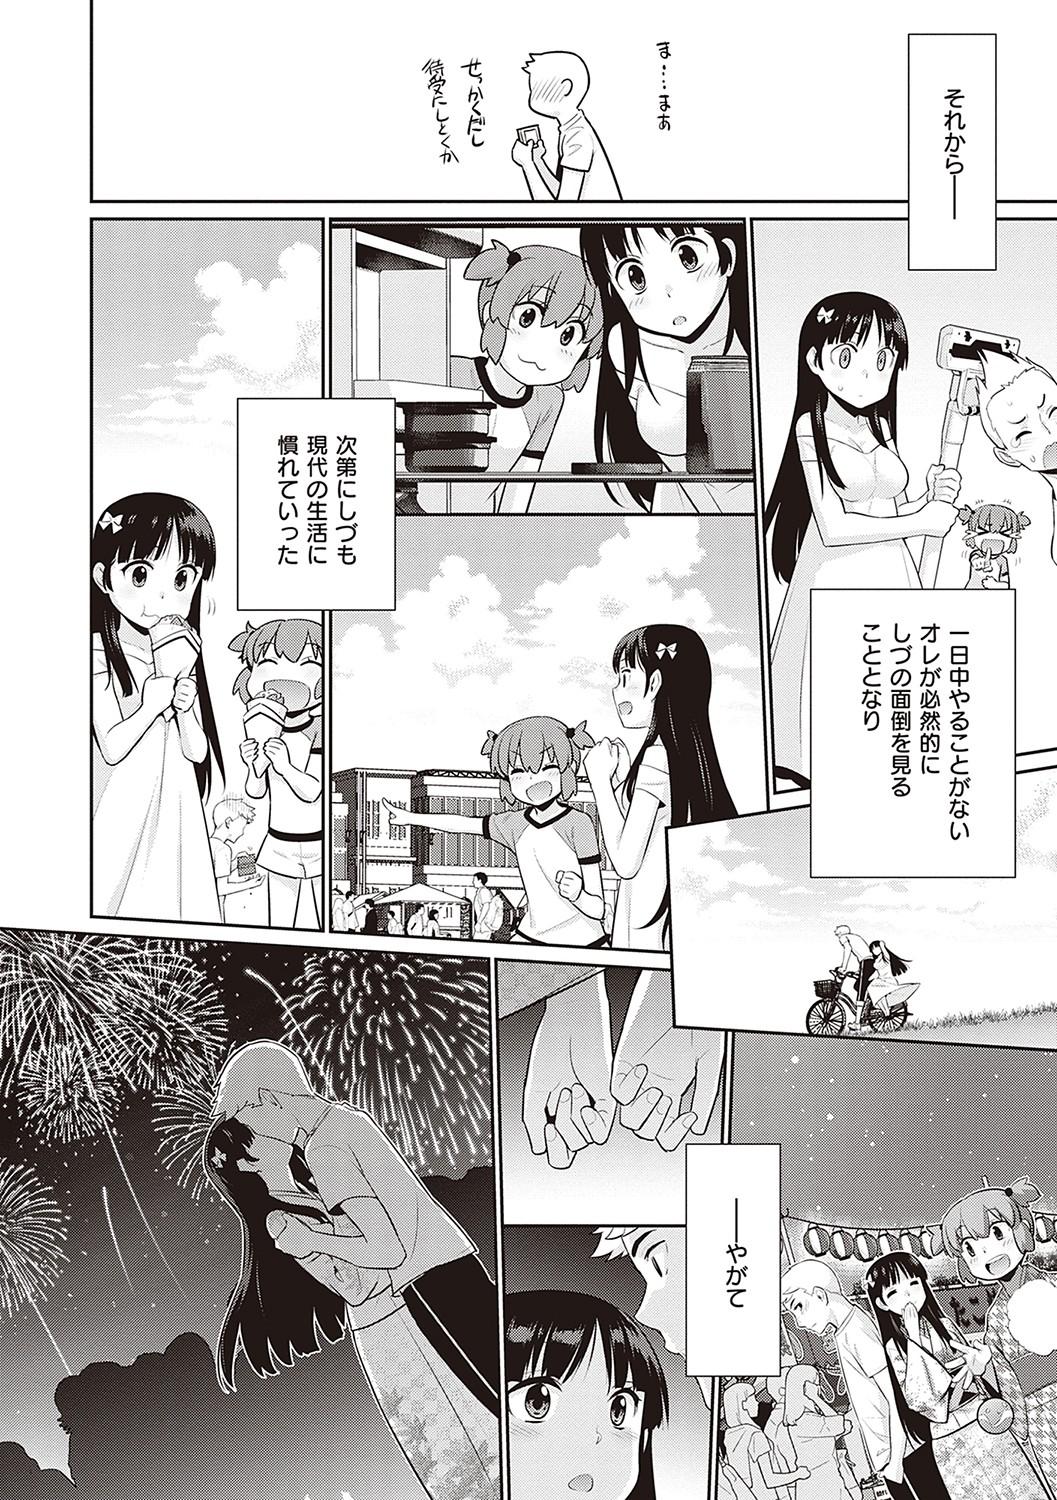 Cute Ashita, Sekai ga Owaru Nara Onlyfans - Page 9